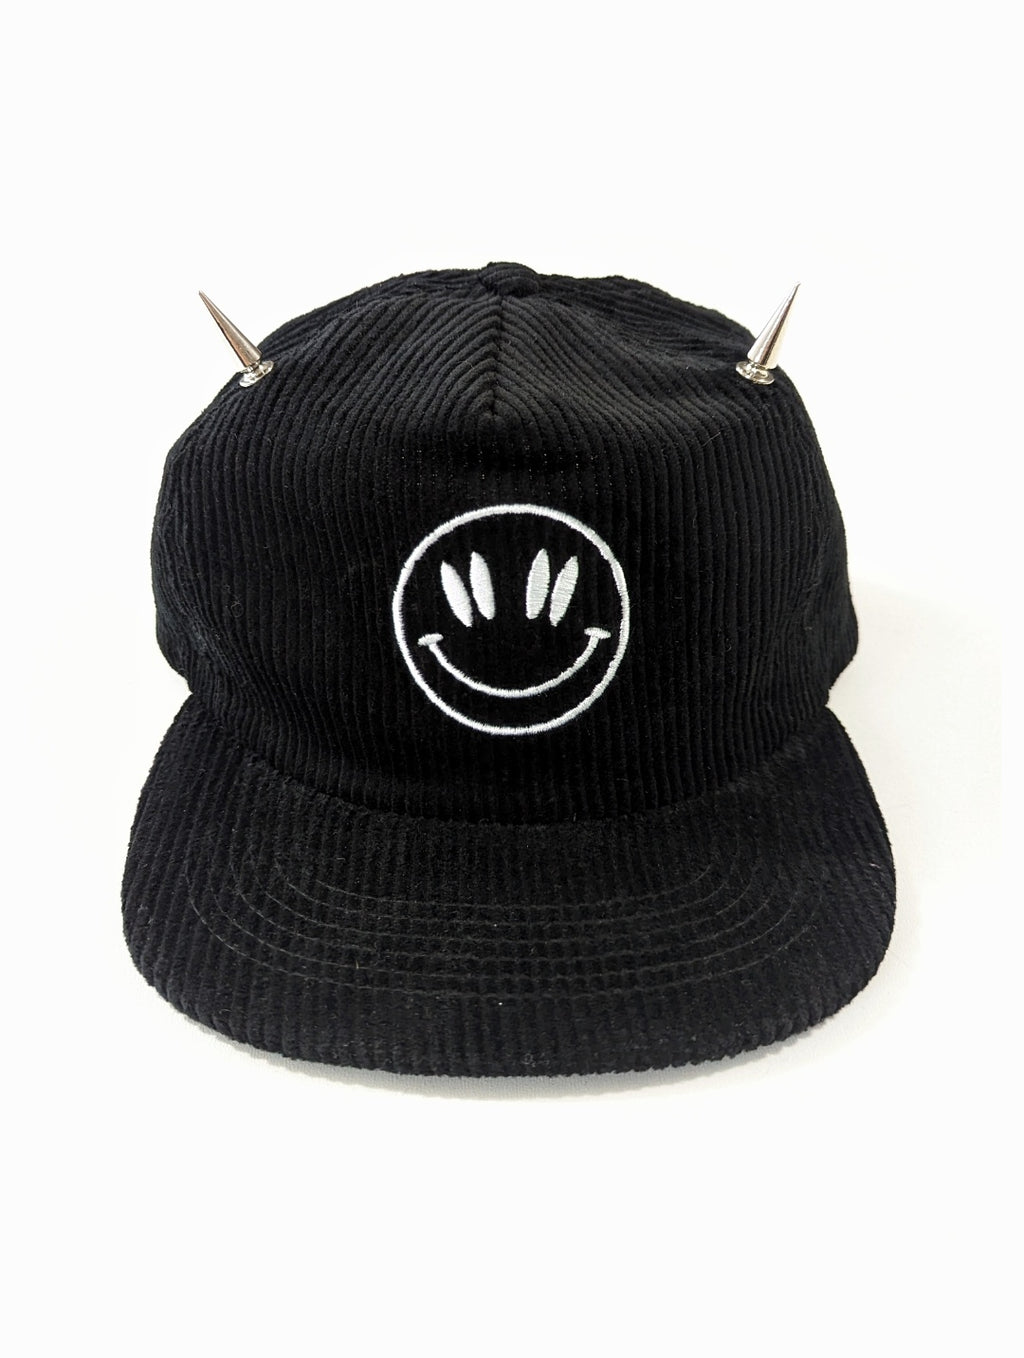 DeathWorks Smiley Hat